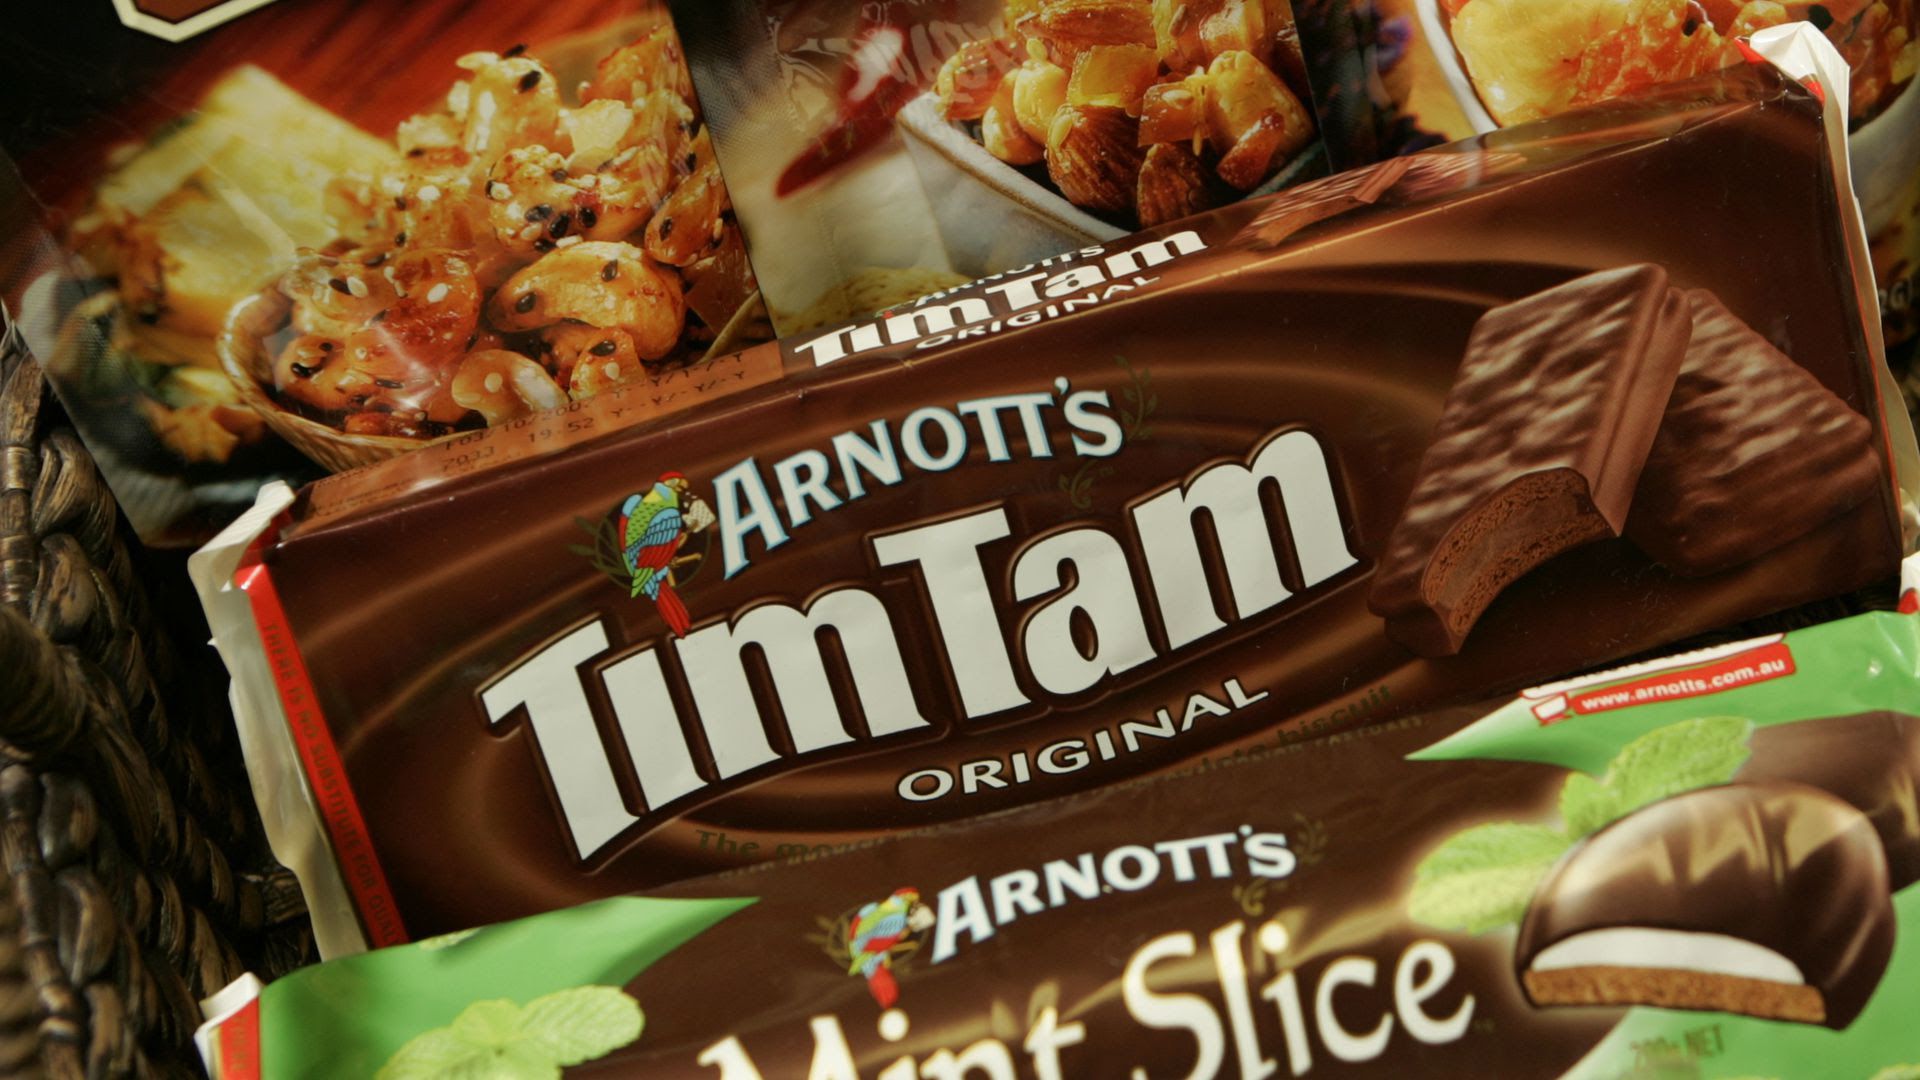 Arnott's TimTam snack